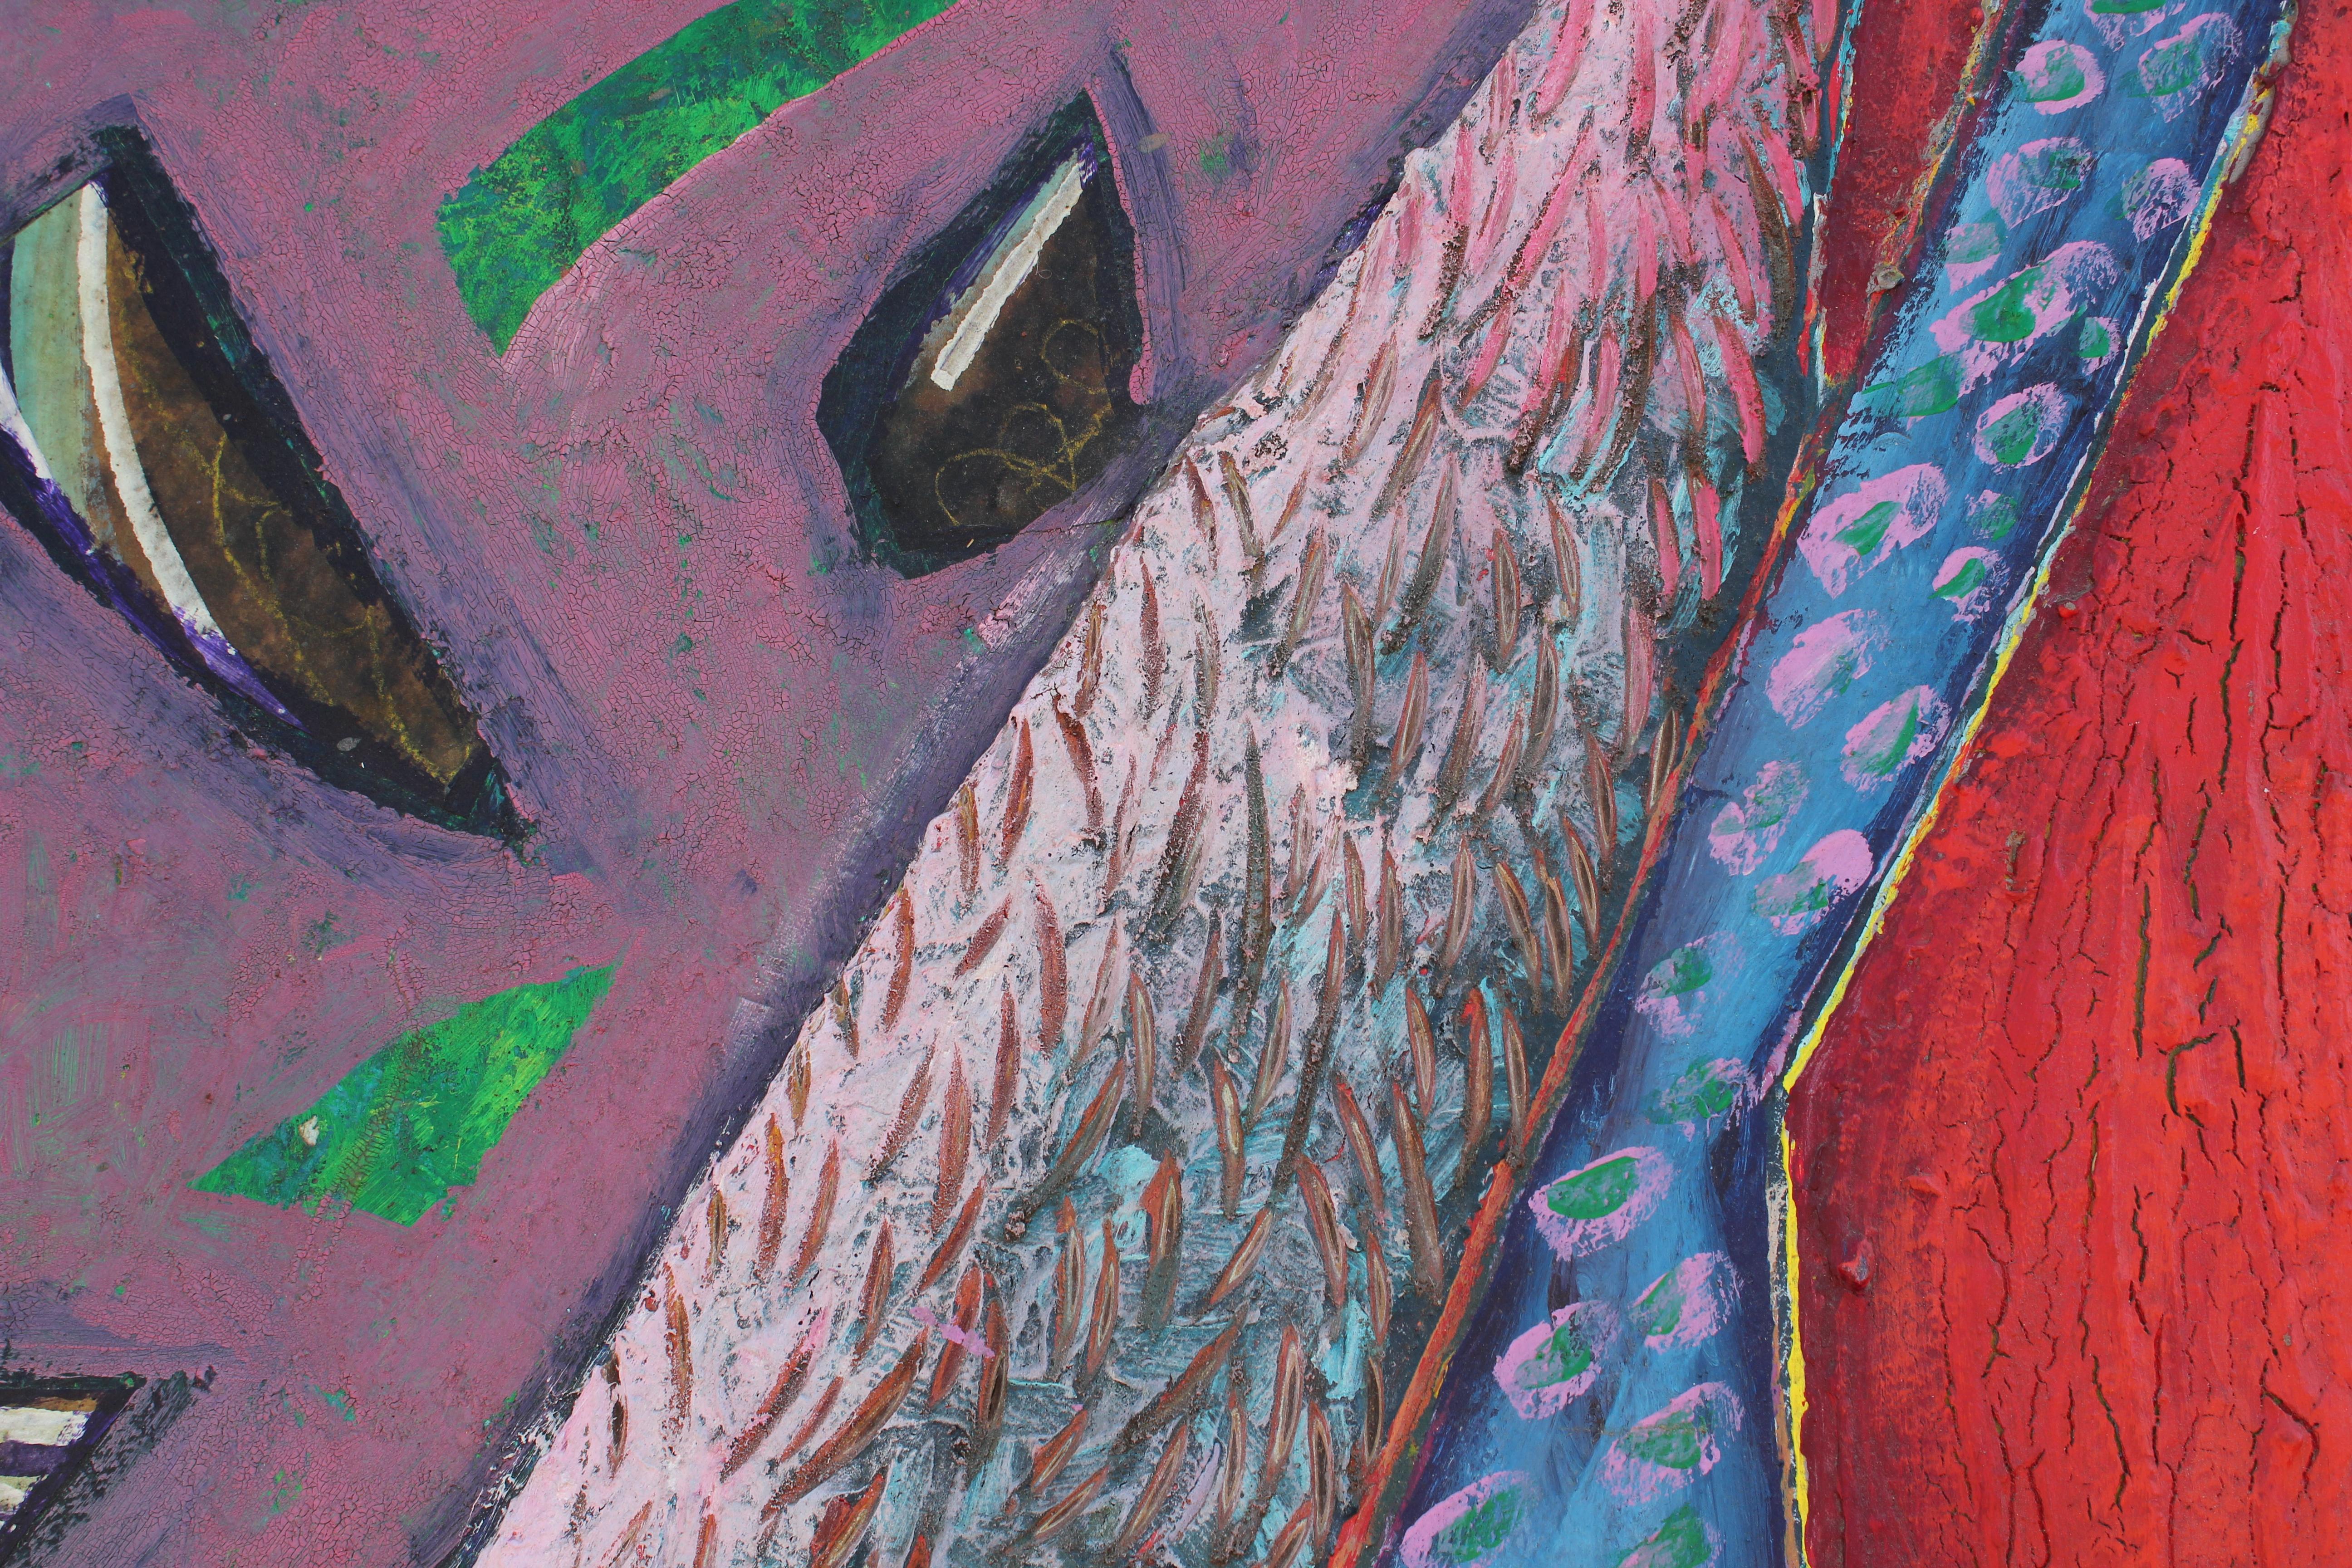 Großes farbenfrohes skulpturales abstraktes Gemälde des texanischen Künstlers Patrick Cronin. Gemalt mit Acrylfarbe und Mischtechnik, datiert 1986. 